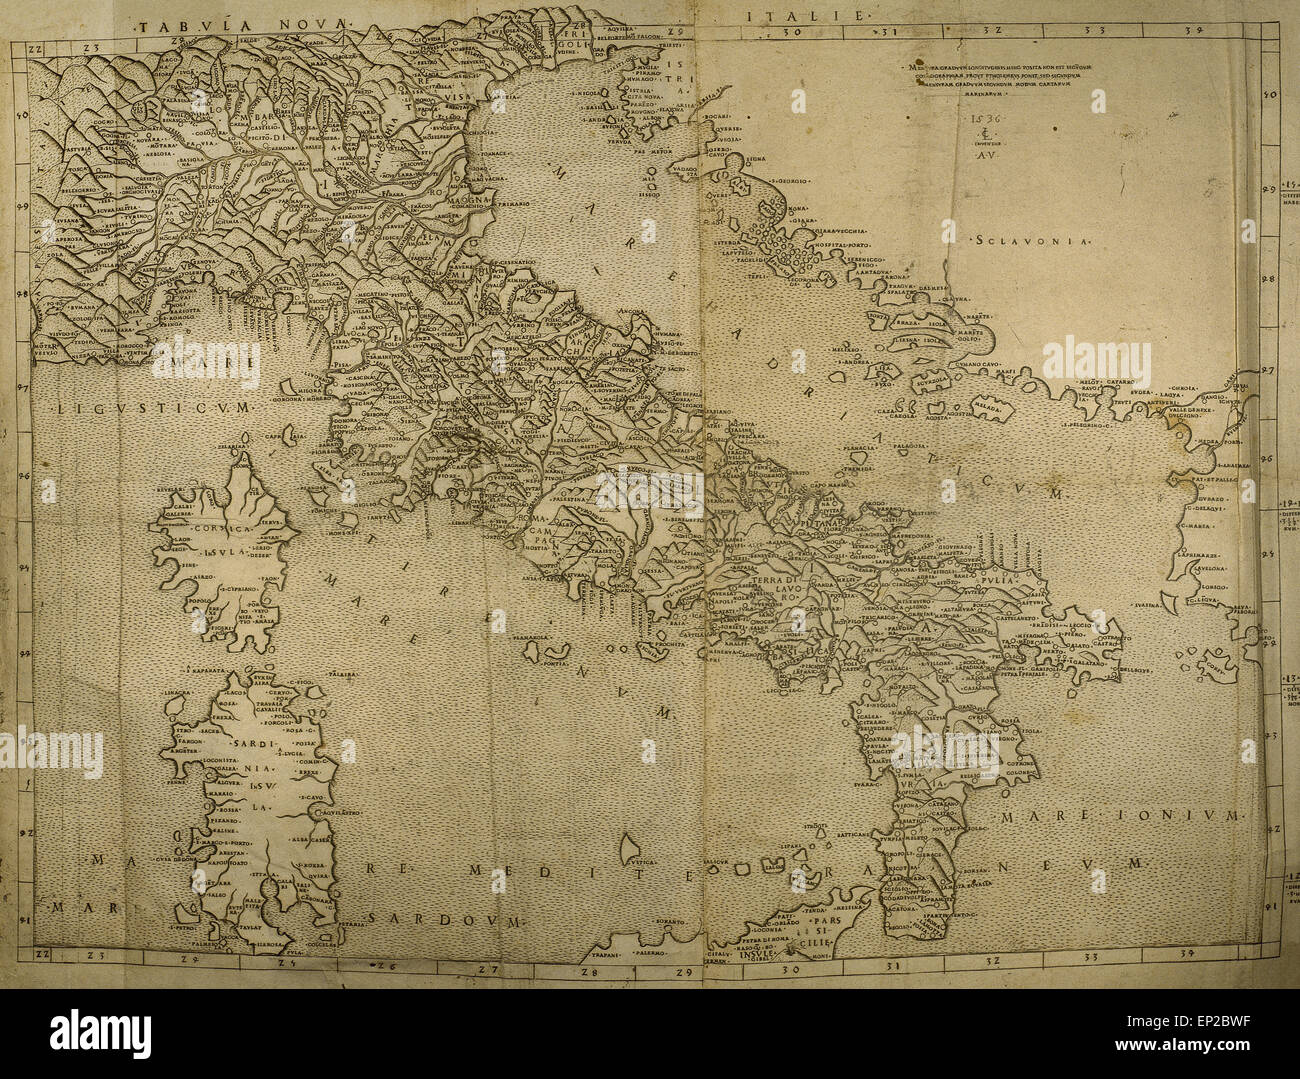 Karte der italienischen Halbinsel, Inseln Korsika und Sardinien und Adria-Küste. Gravur. 16. Jahrhundert. Stockfoto